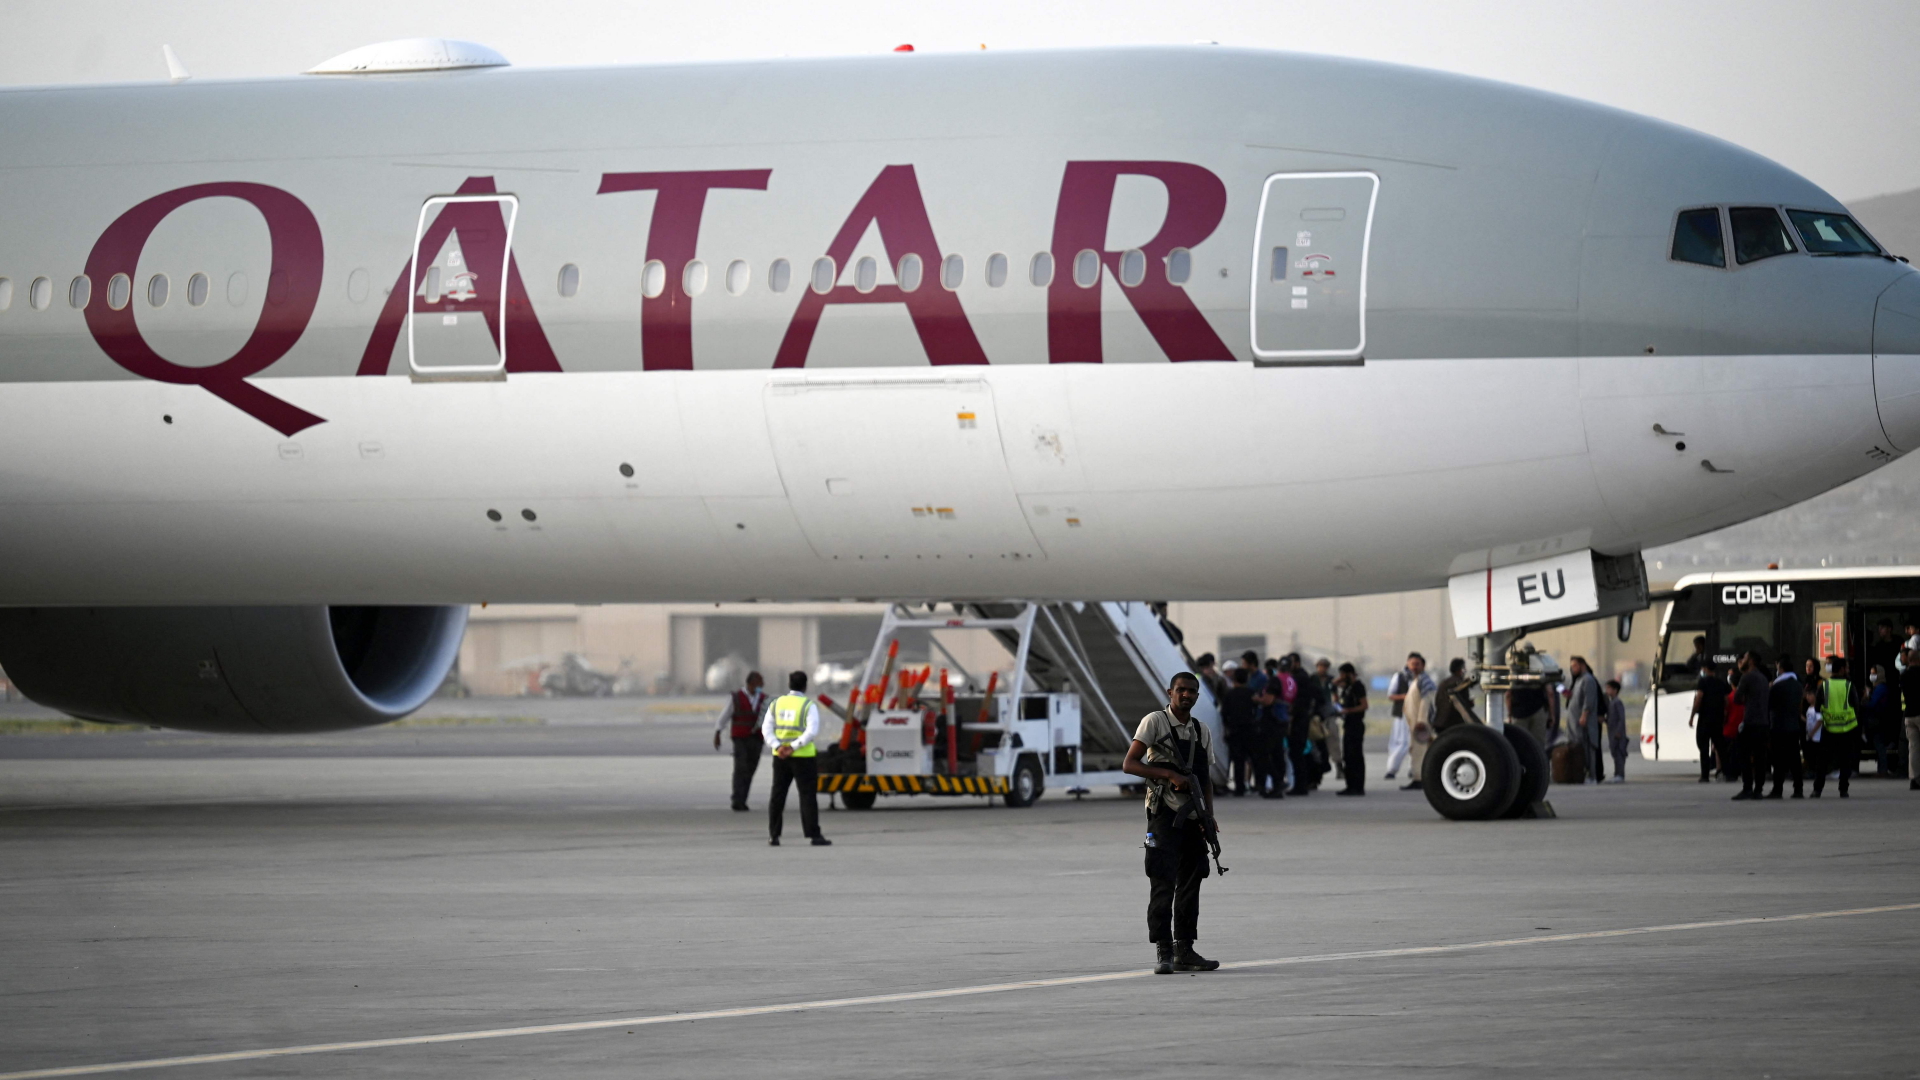 Passagiere betreten ein Flugzeug der Gesellschaft Qatar Airways am Flughafen Kabul